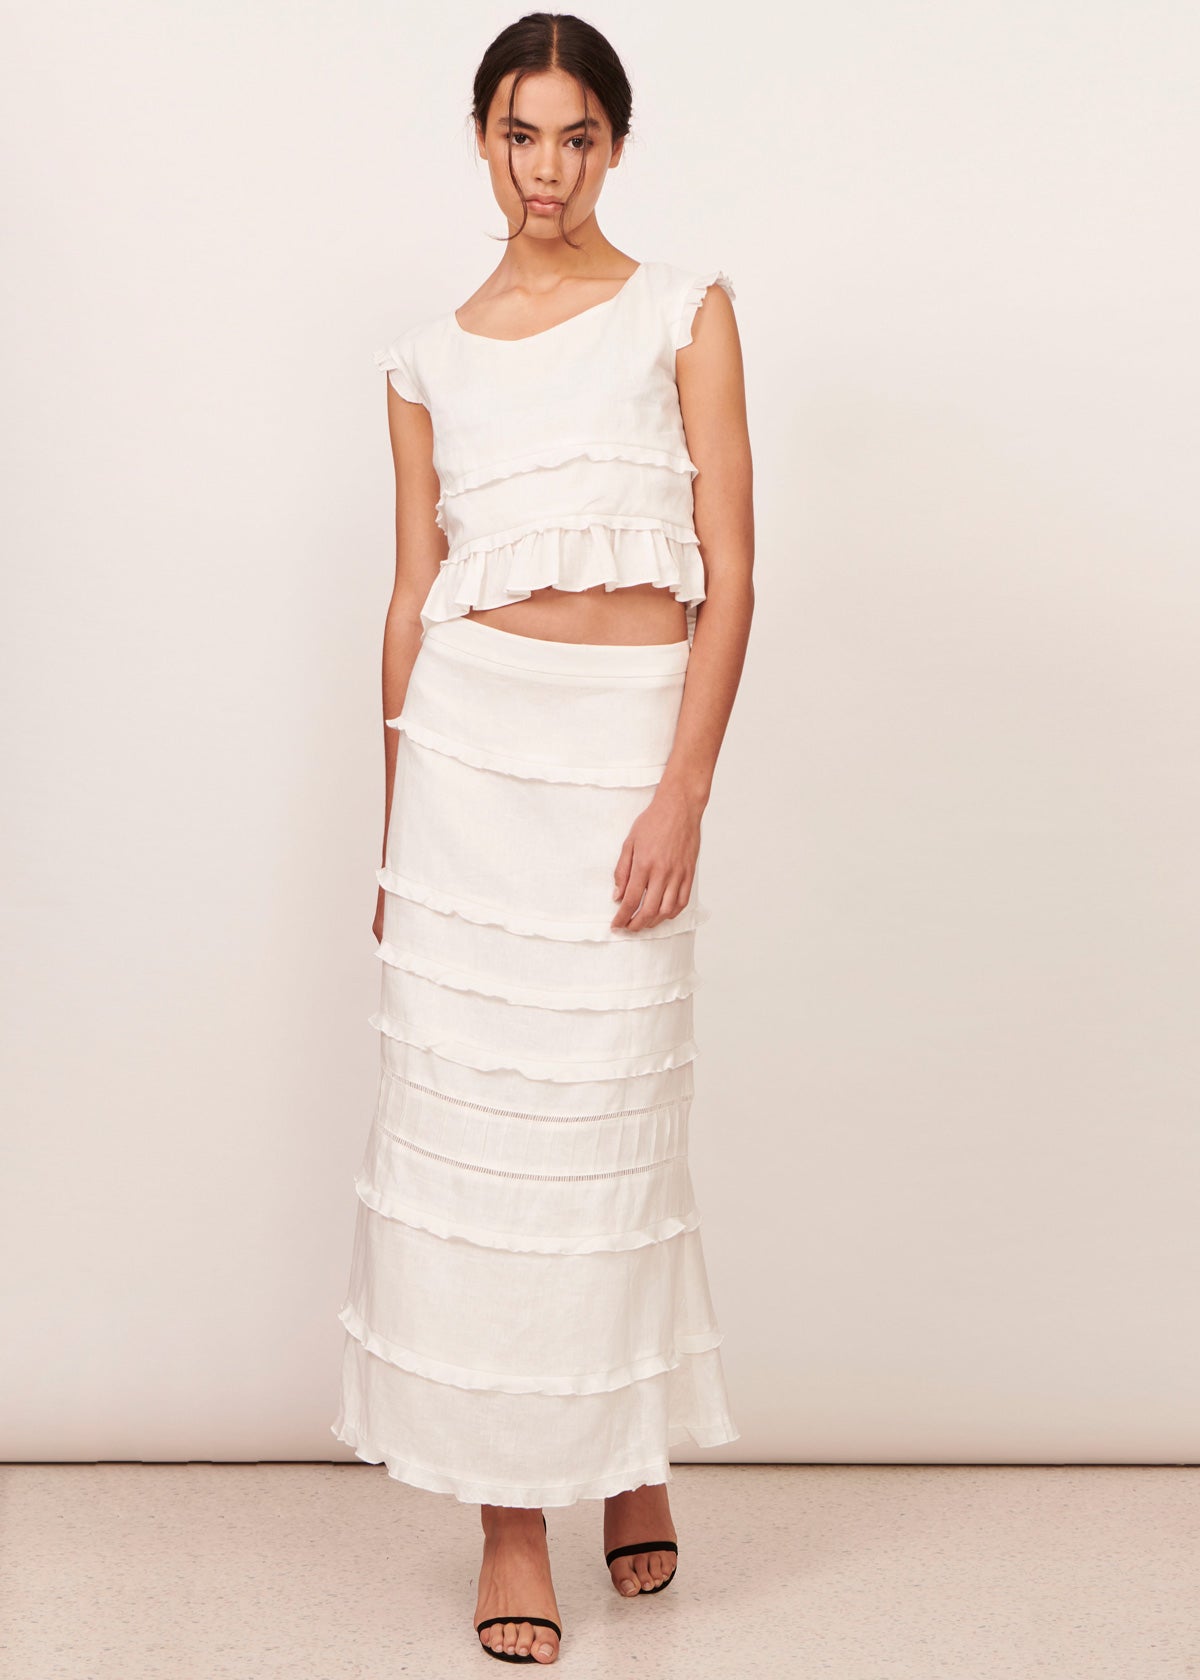 Eloise Top & Skirt Set - White